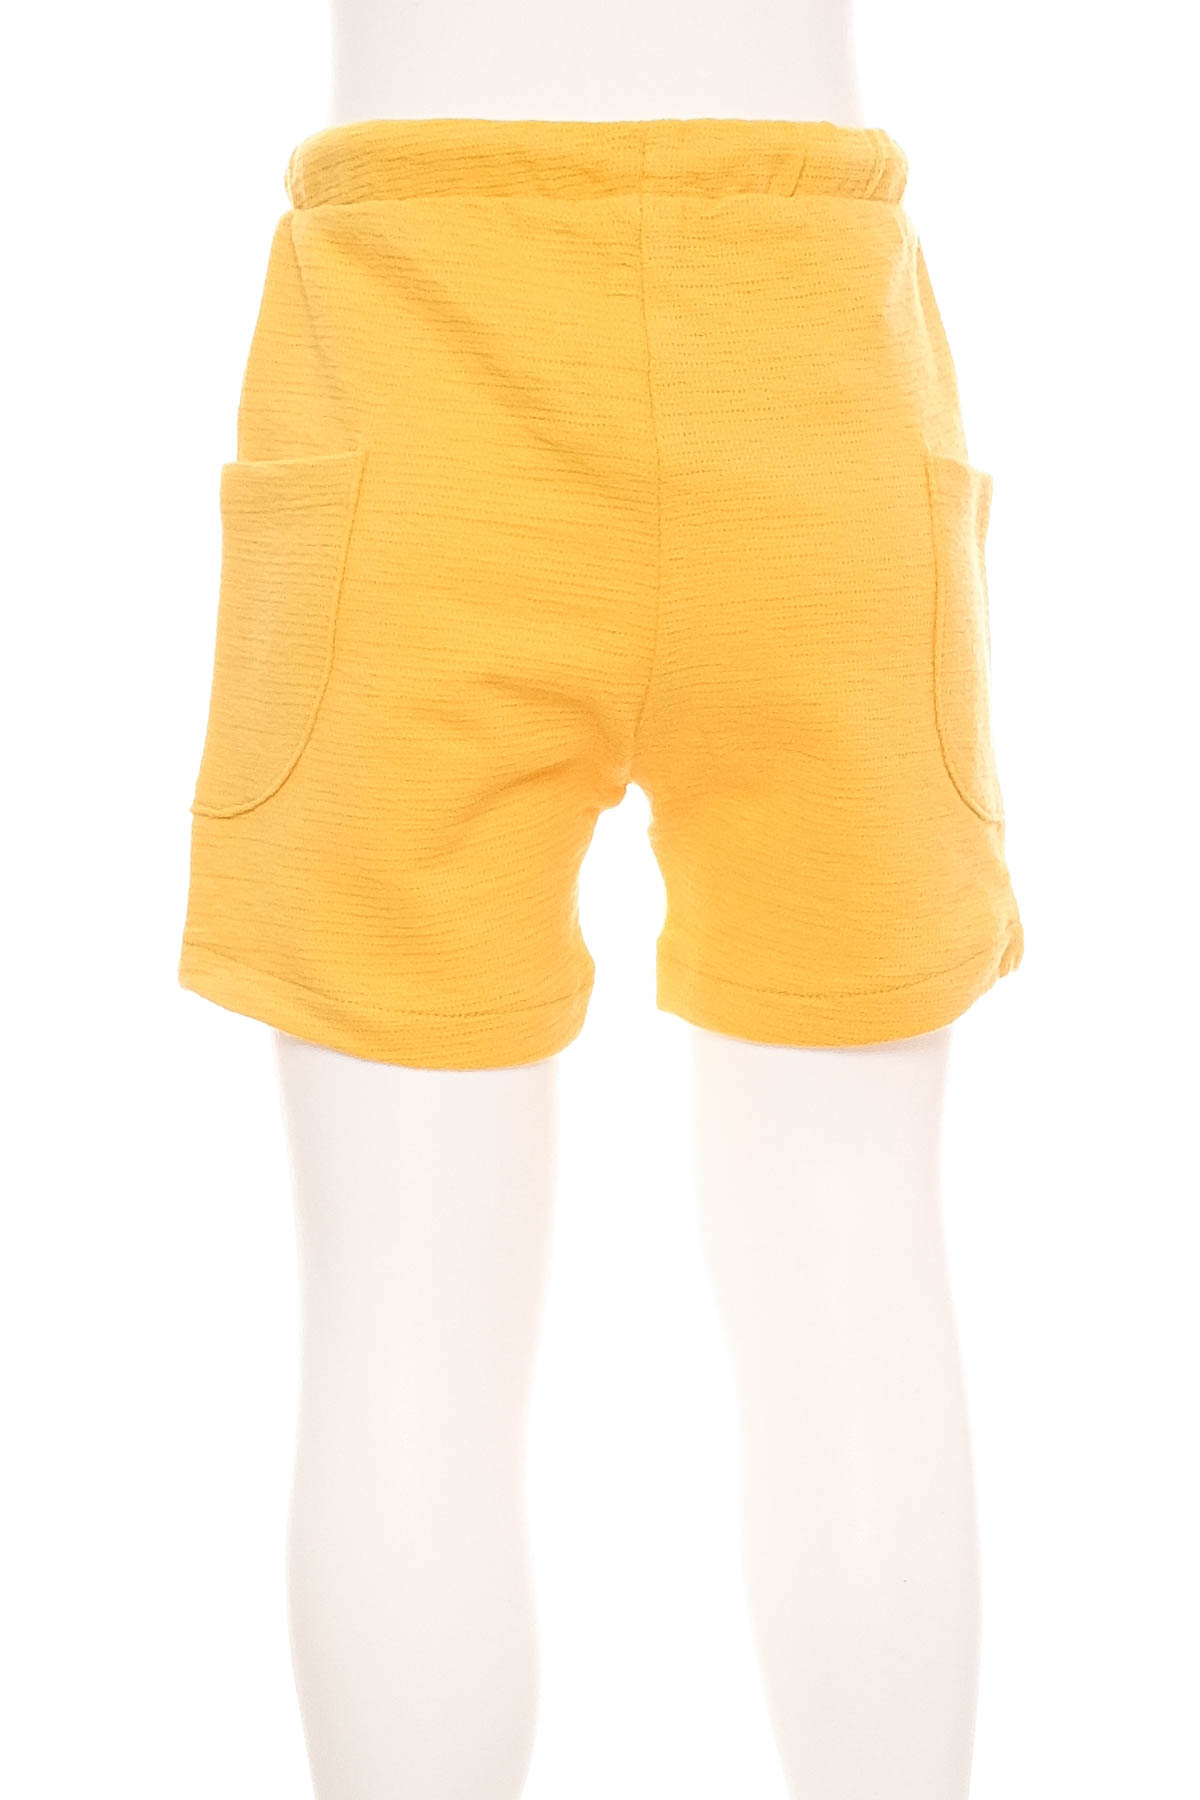 Бебешки панталони за момче - Fagottino by OVS - 1